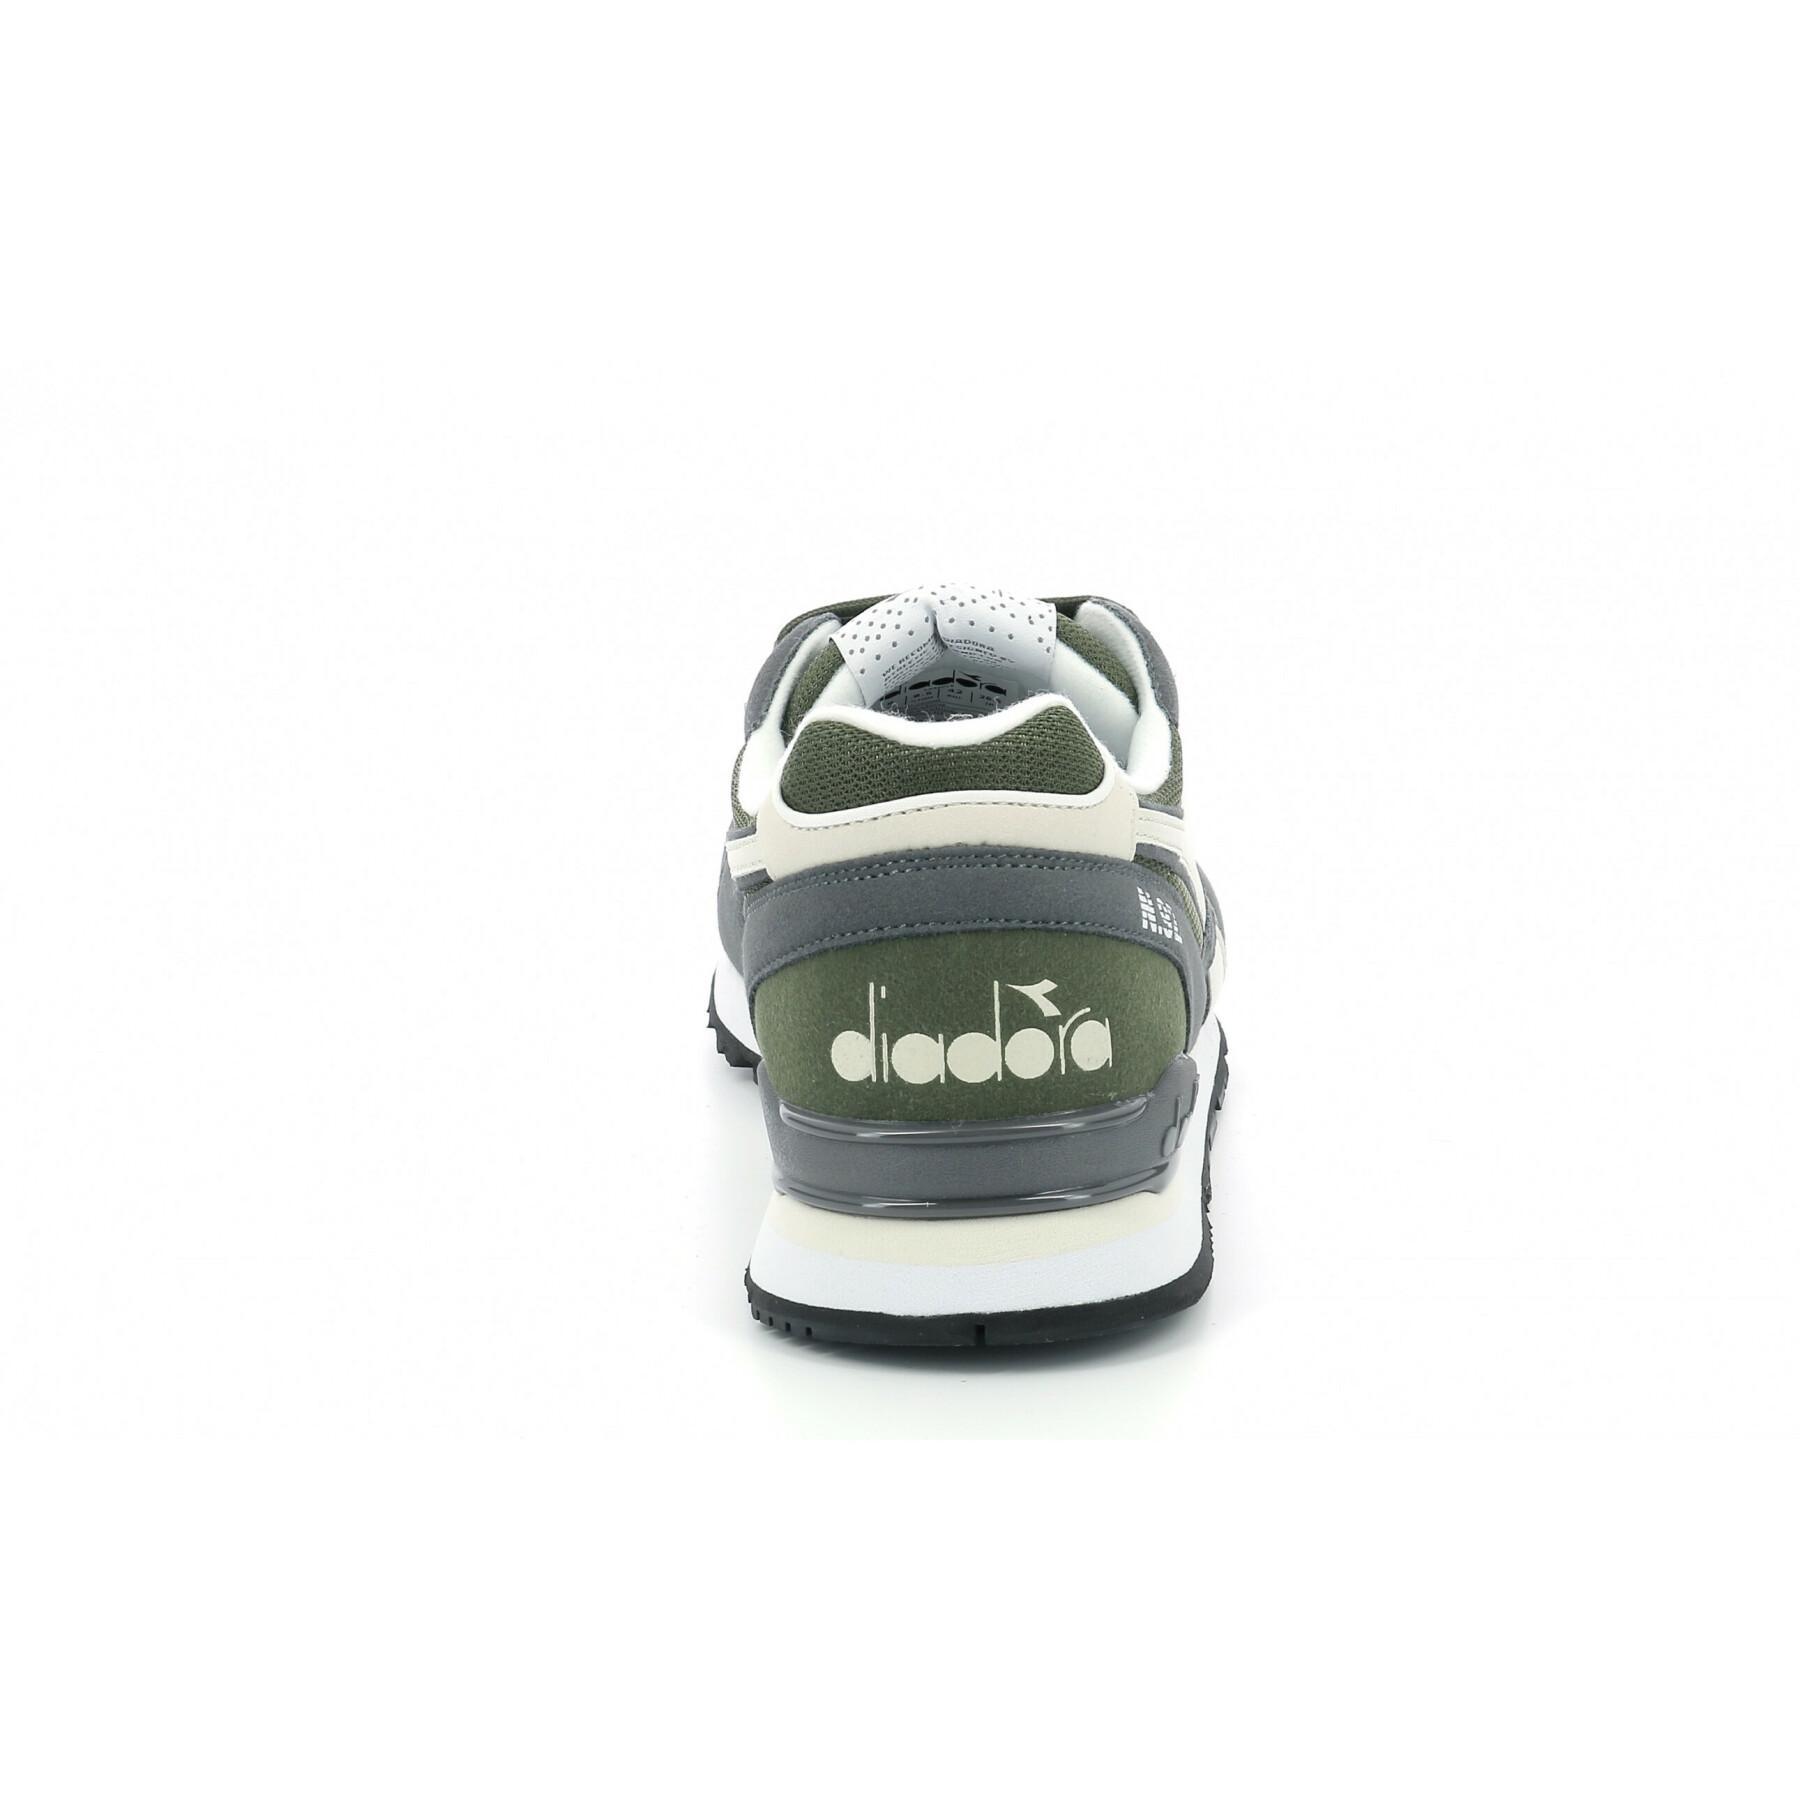 Sneakers Diadora N.92